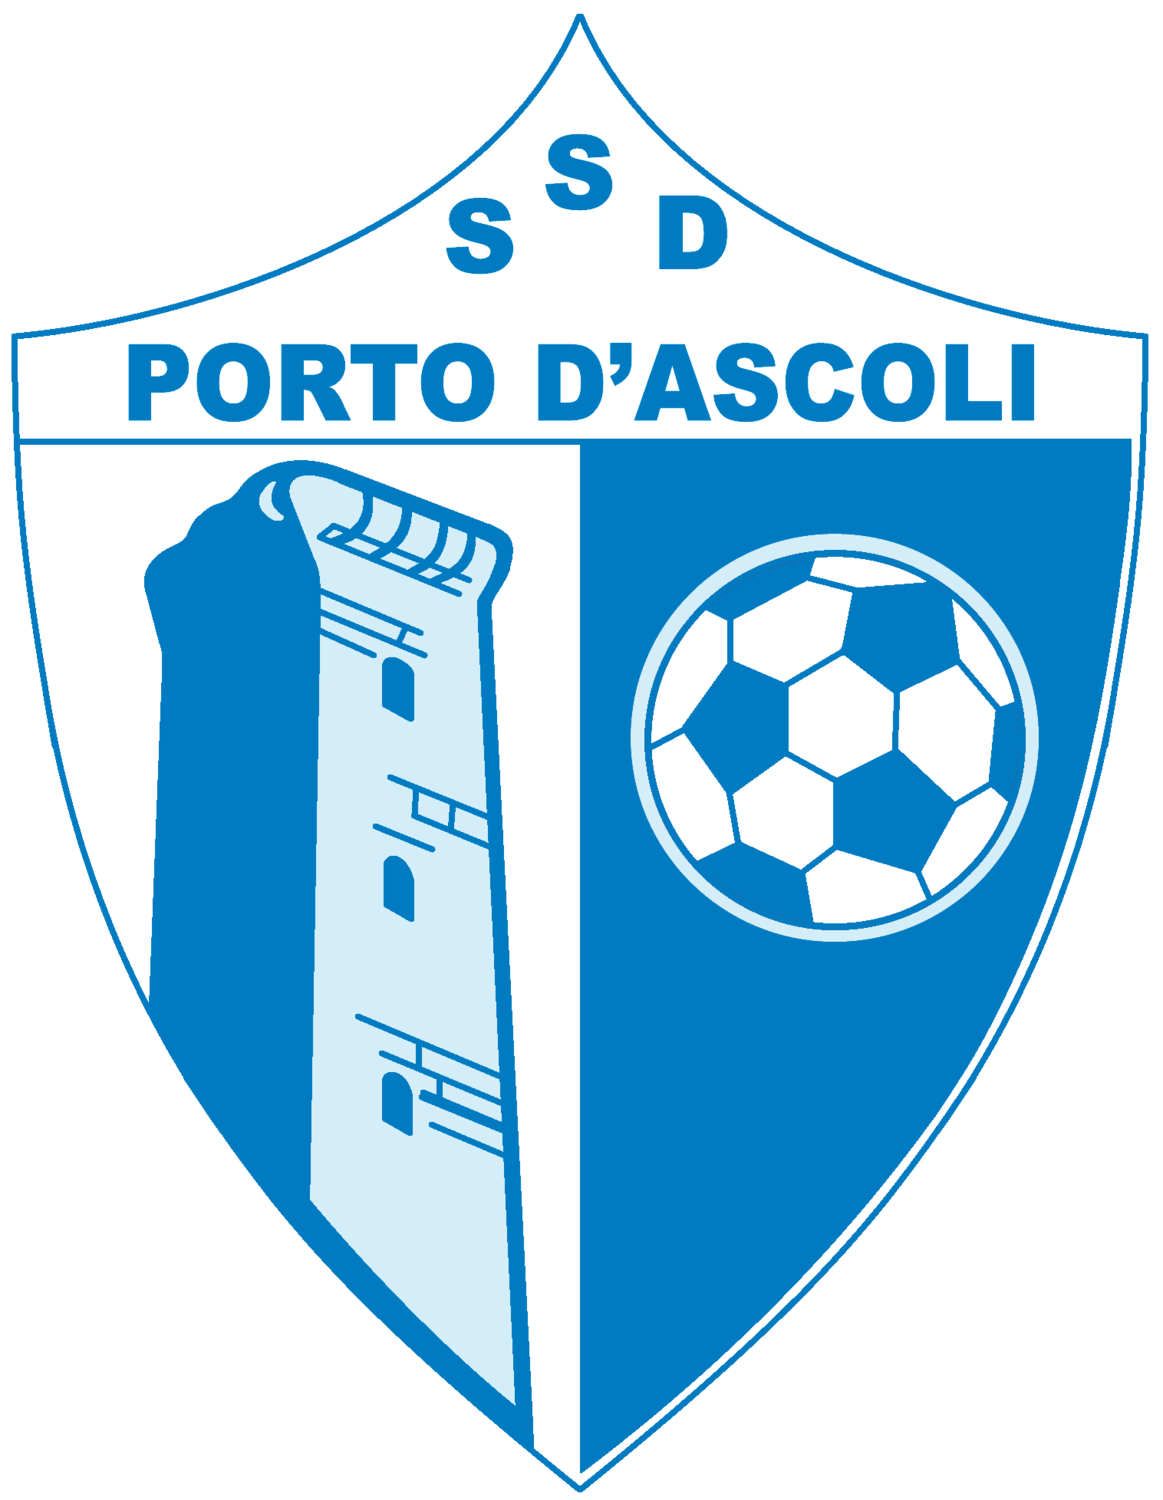 Wappen SSD Porto D'Ascoli diverse